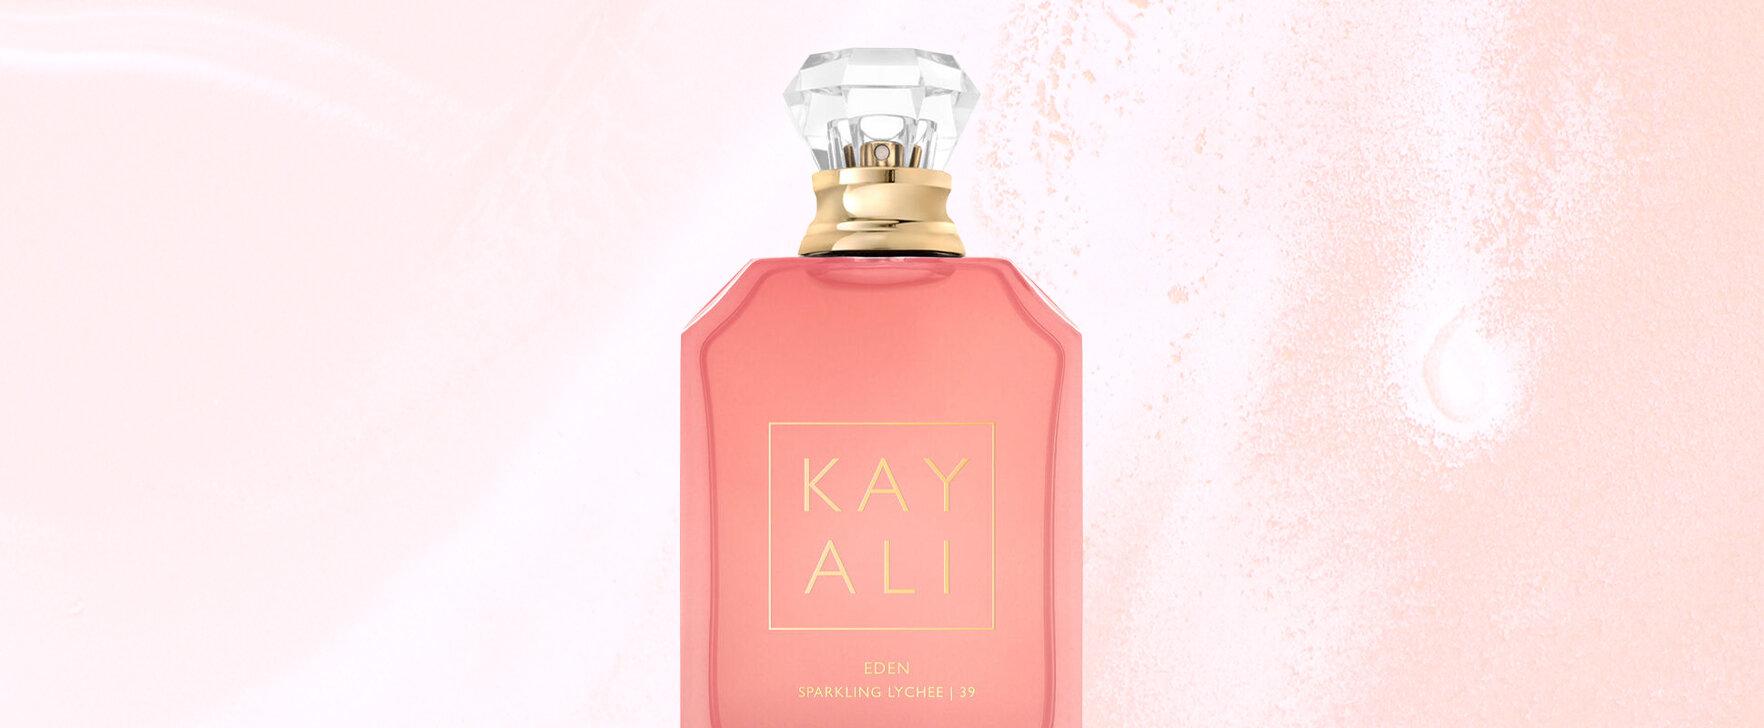 Fruity-Floral Seduction: The "Eden Sparkling Lychee | 39" Eau de Parfum by Kayali